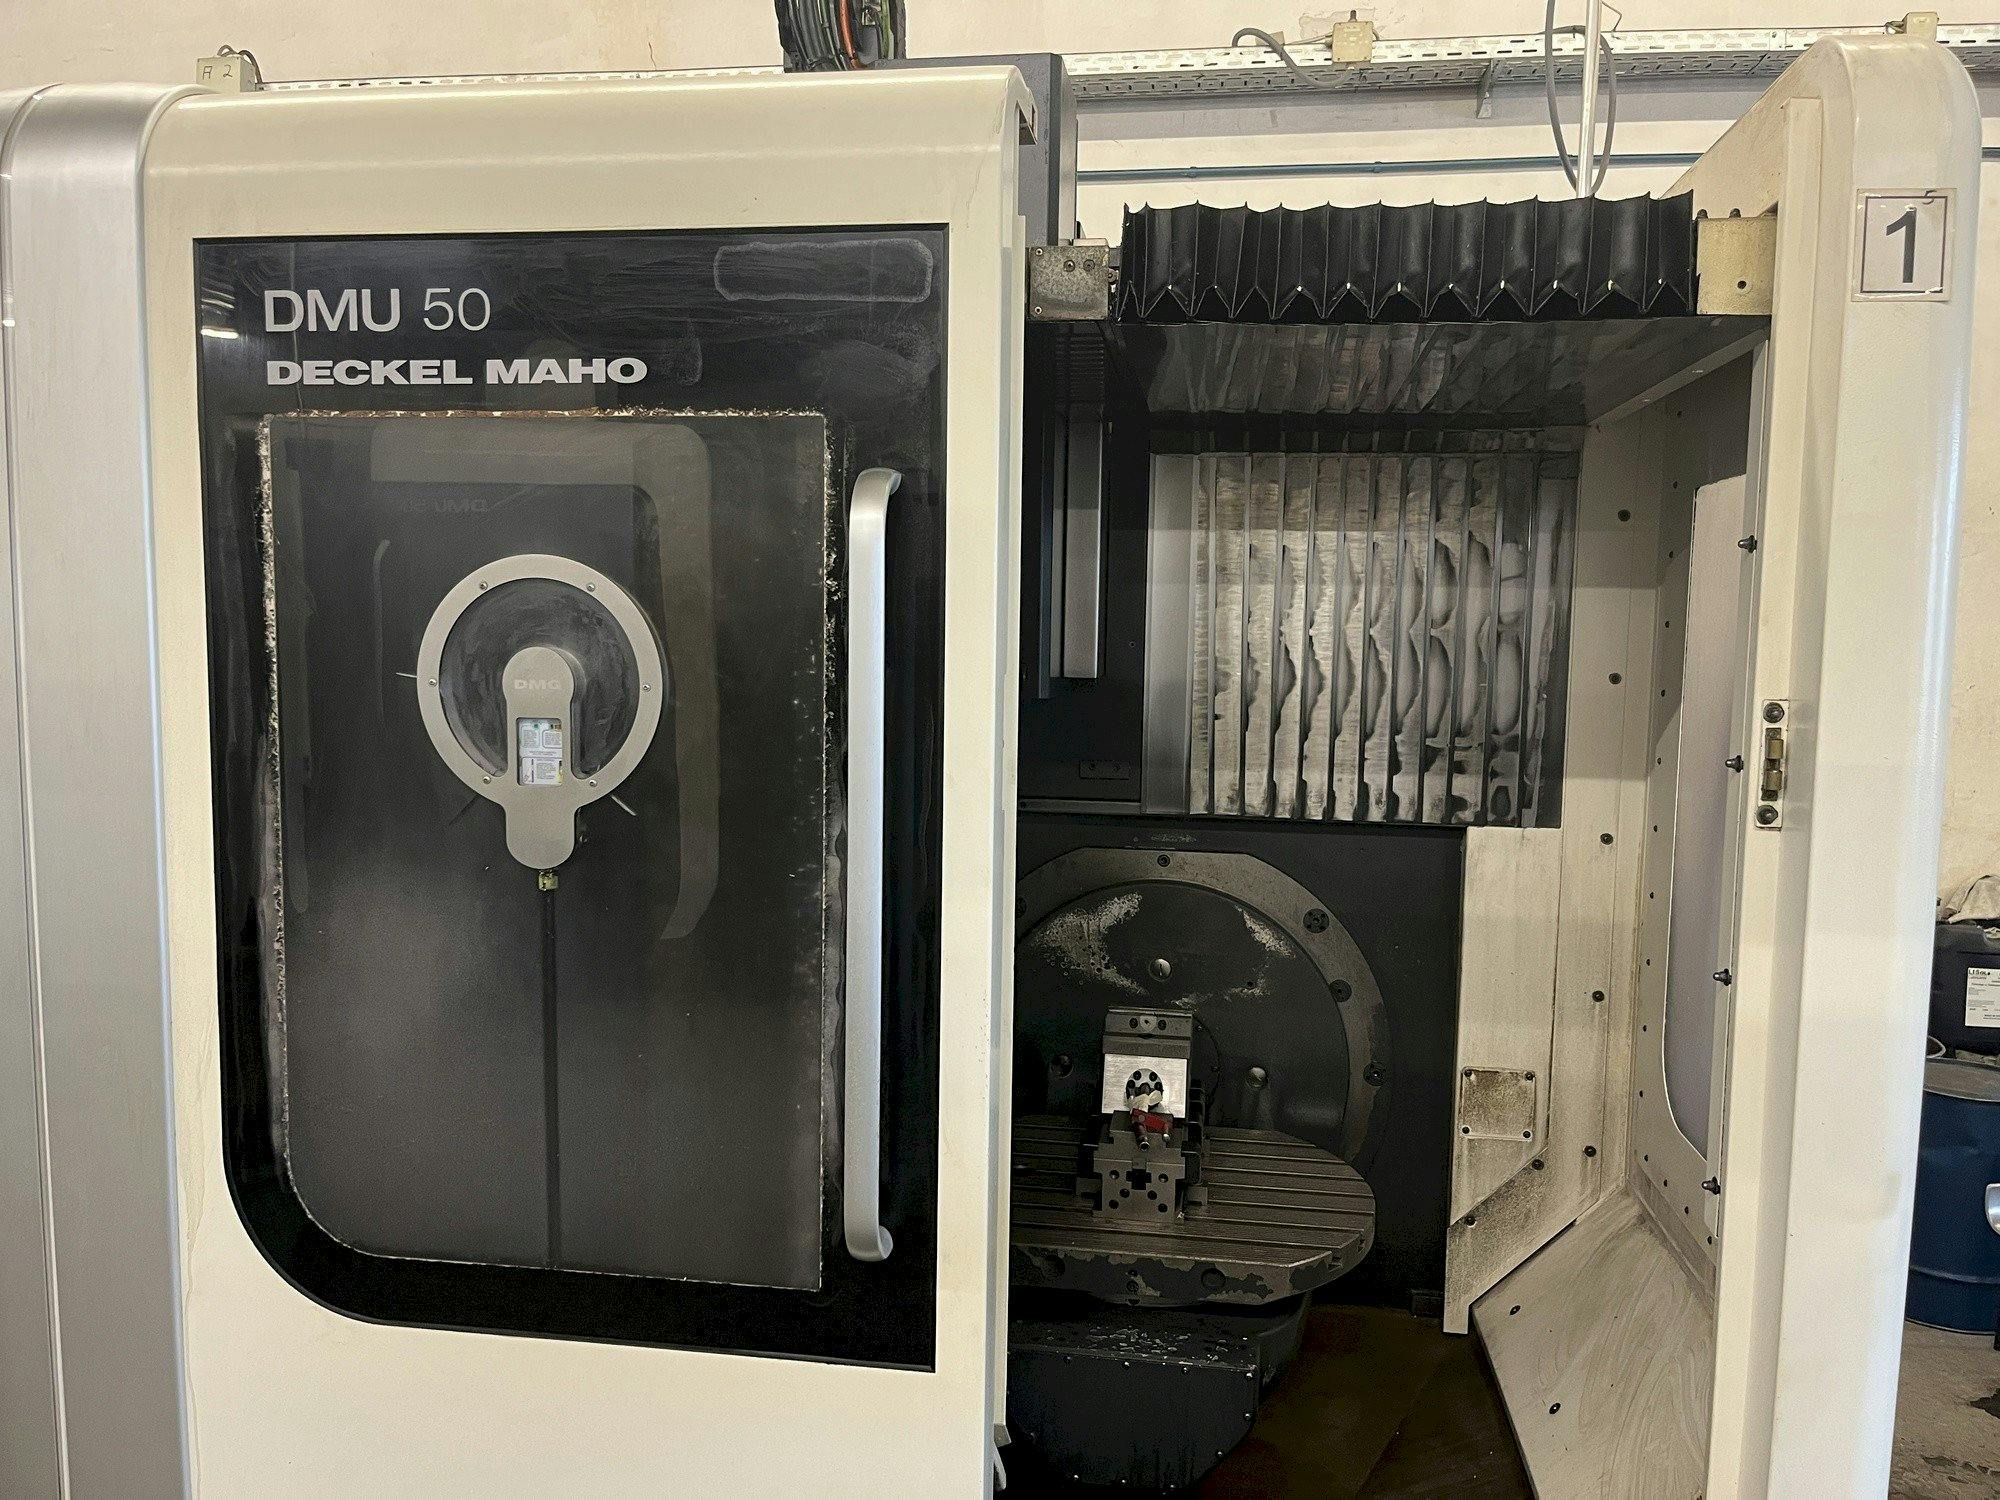 Vista frontal de la máquina DECKEL MAHO DMU 50